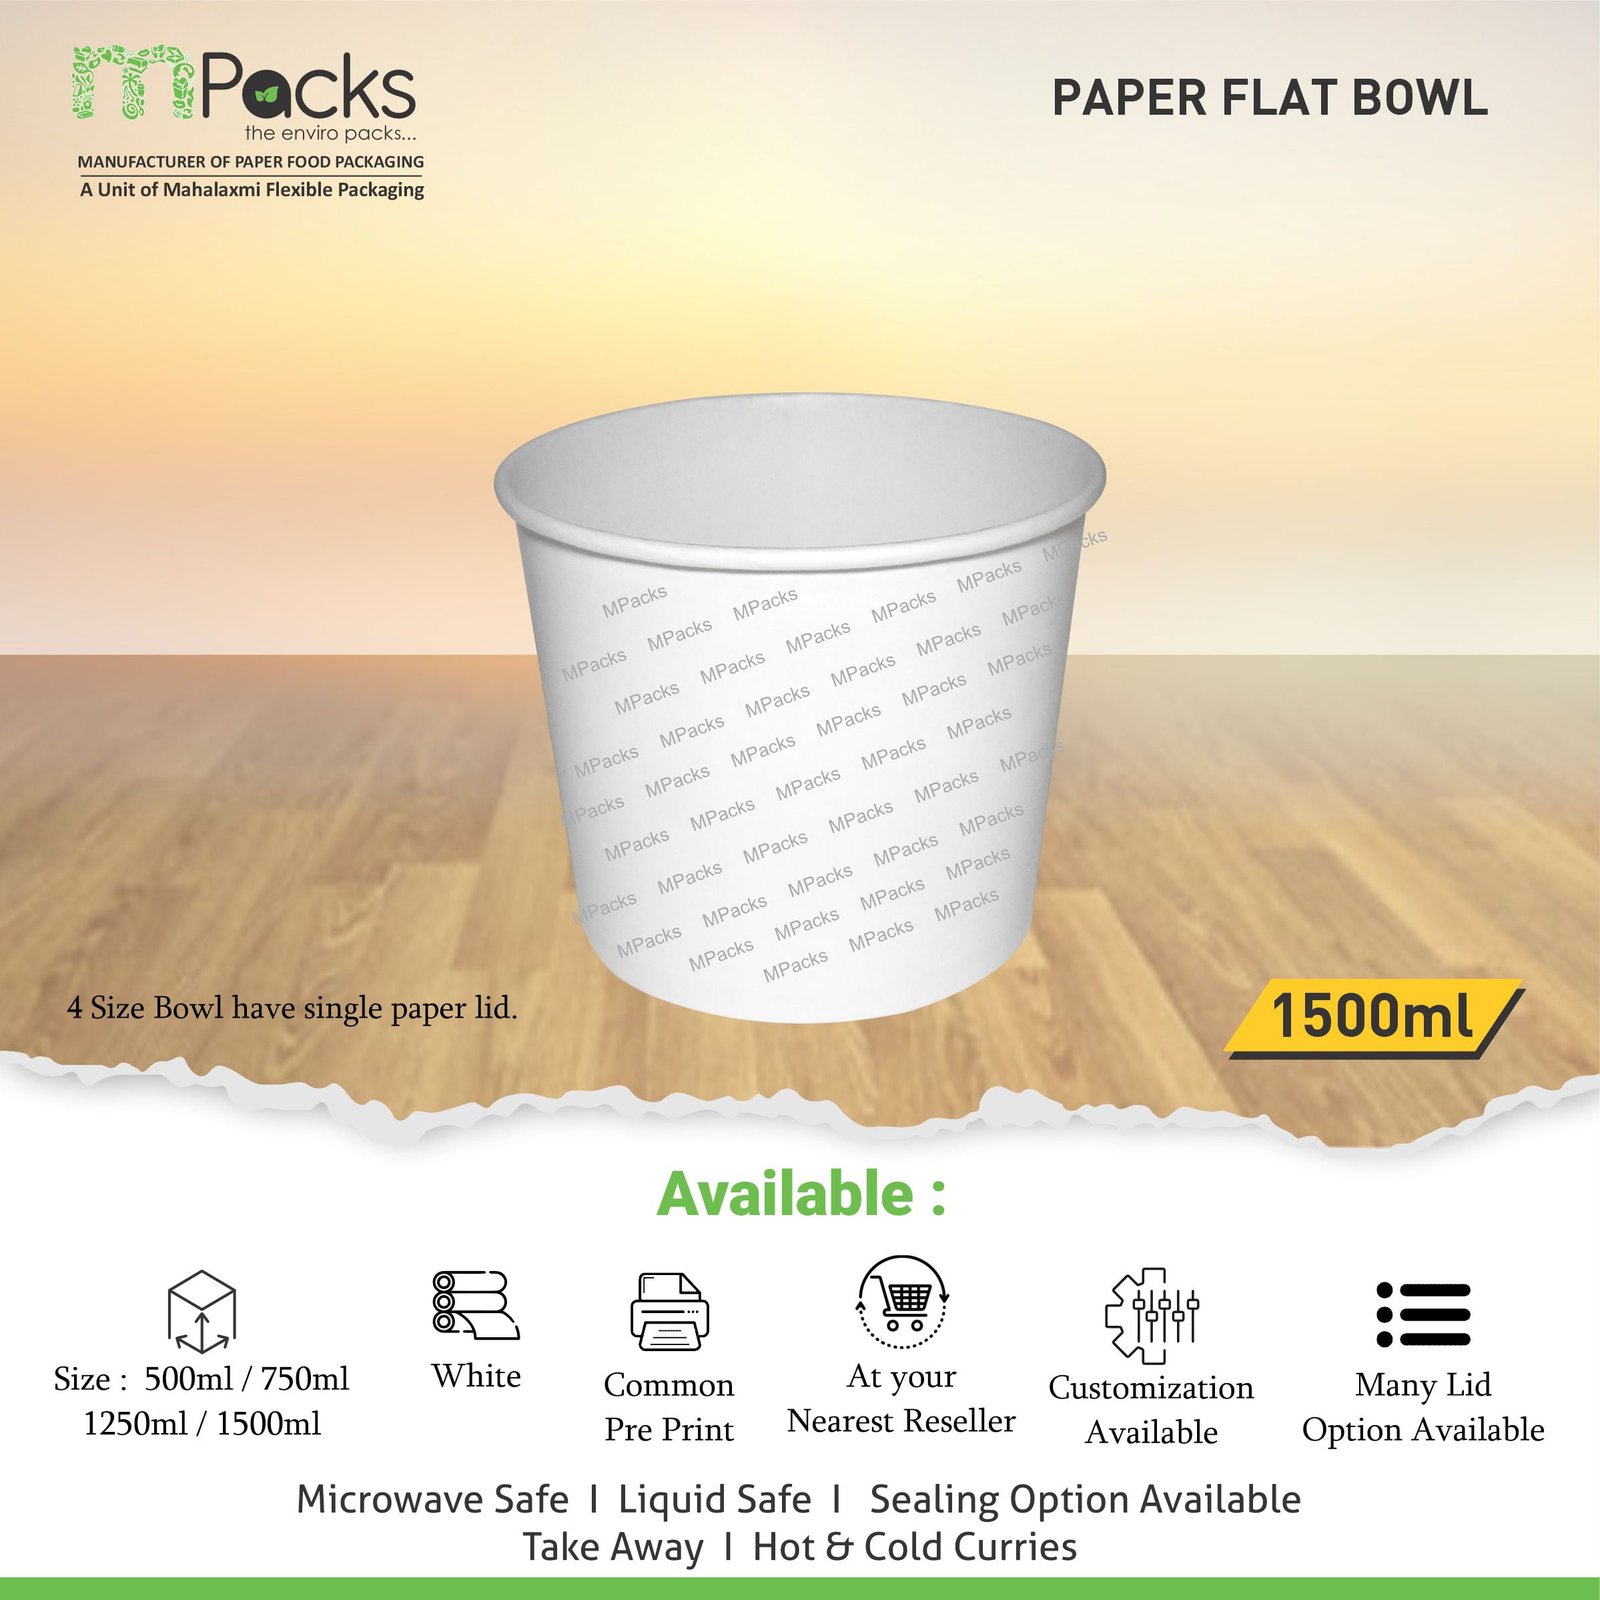 paper flat bowl | Paper Food Flat Bowl | Flat Bowl Container | Flat Bowl, Soup Bowl | White Paper with Lid -1500ml, 50oz Size